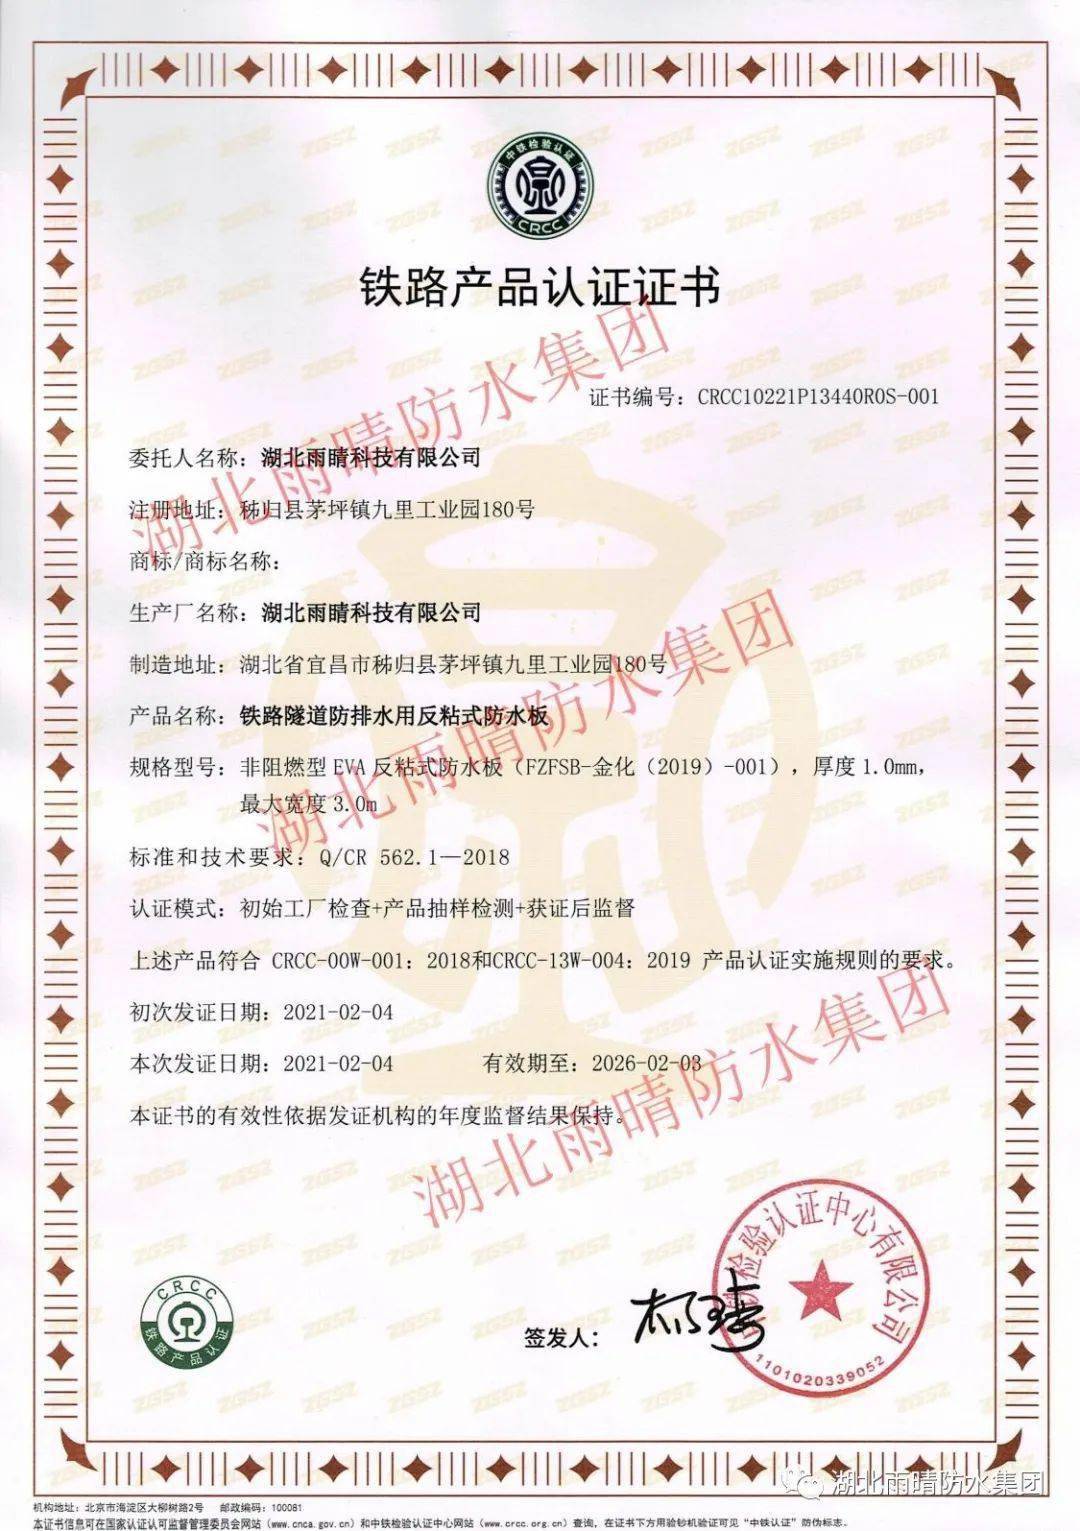 湖北雨晴集团荣获铁路产品CRCC认证证书!